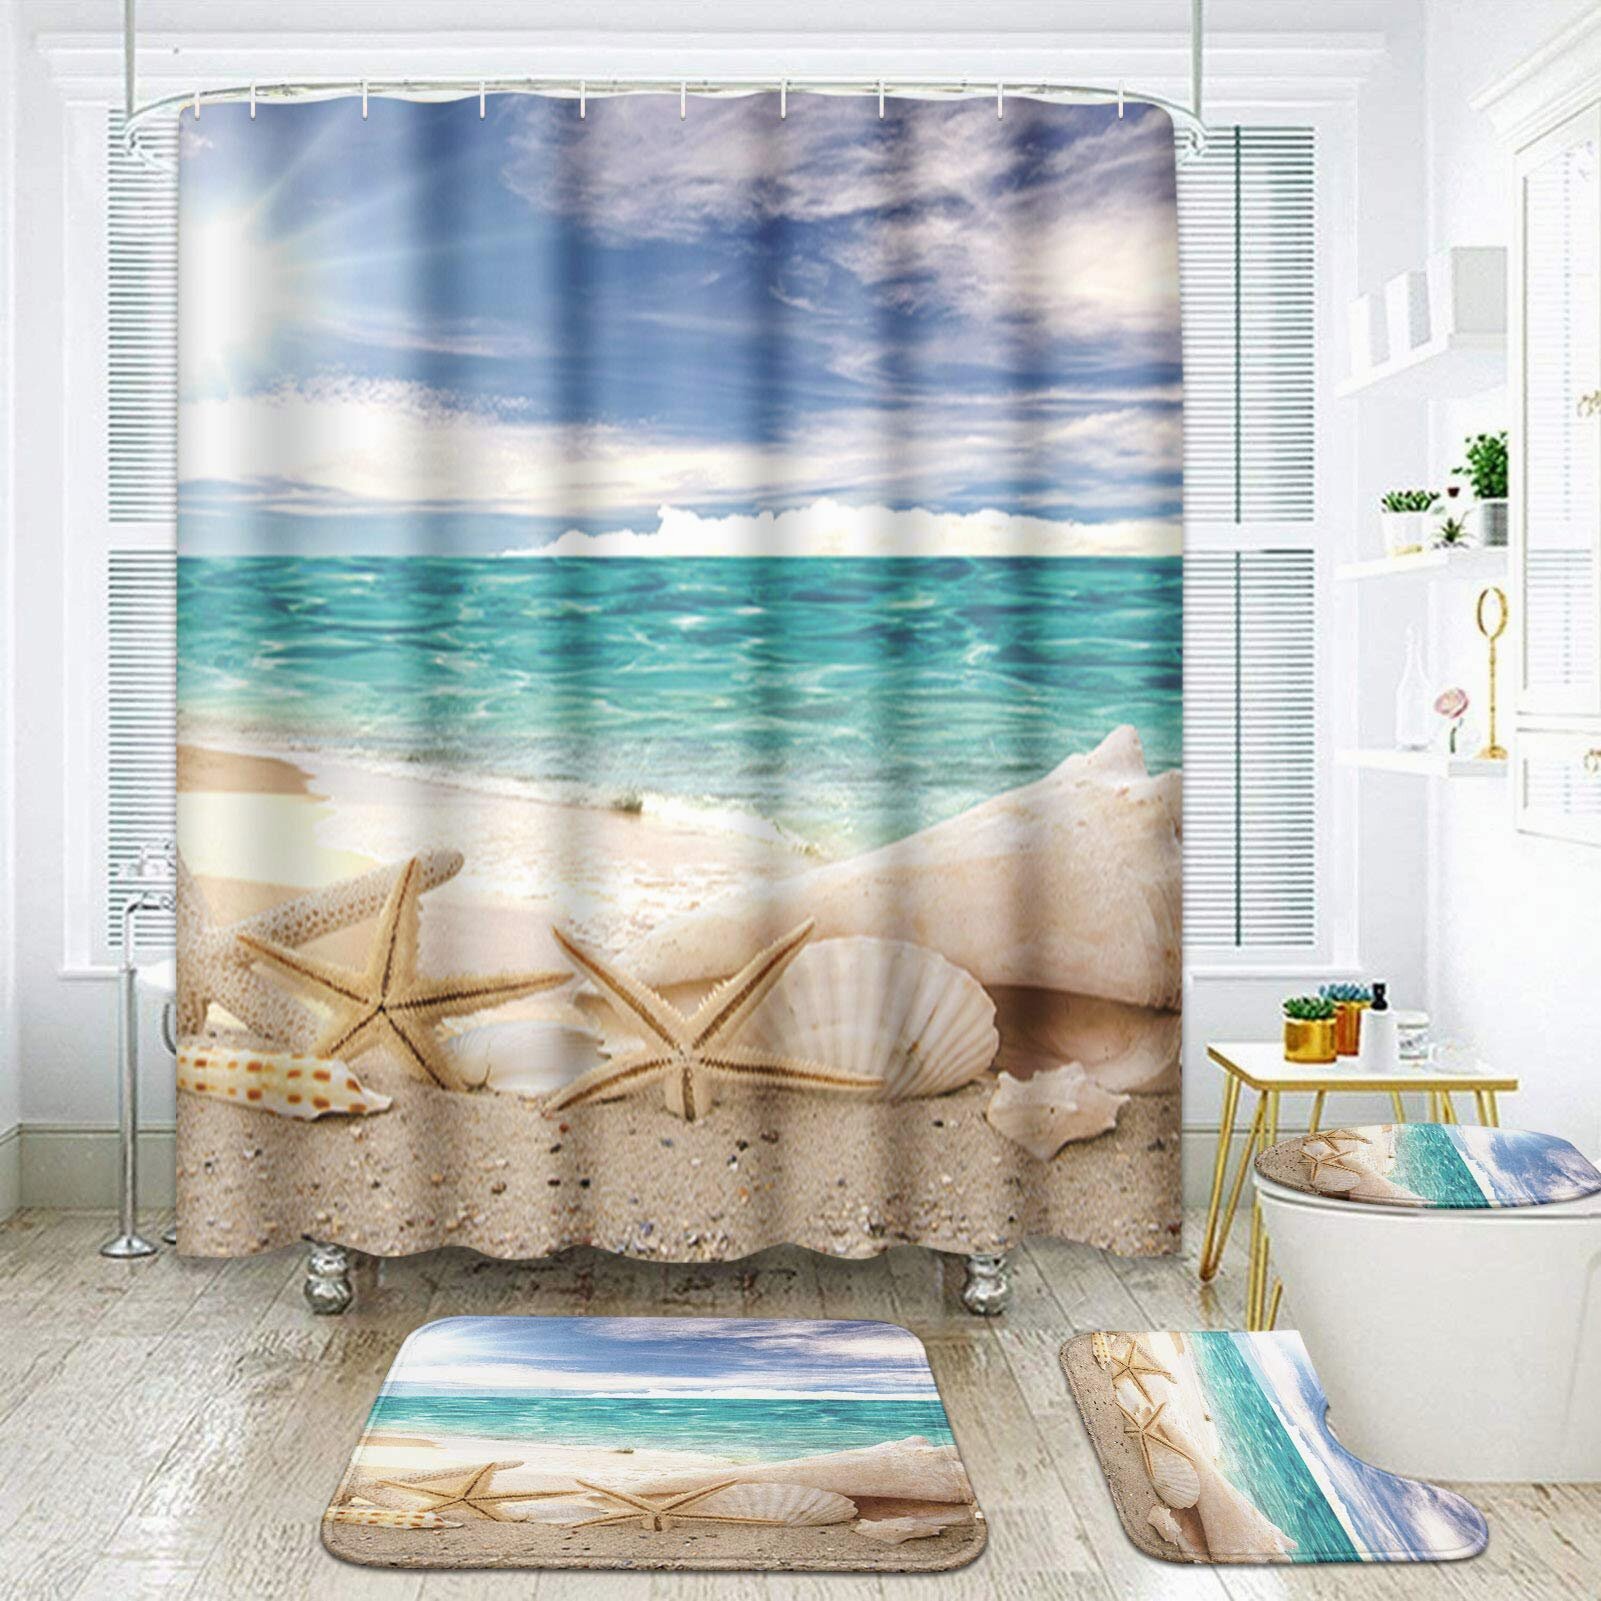 Blue Sea Beach Island Shower Curtain BathMat Toilet Cover Rug Bathroom Decor Set 